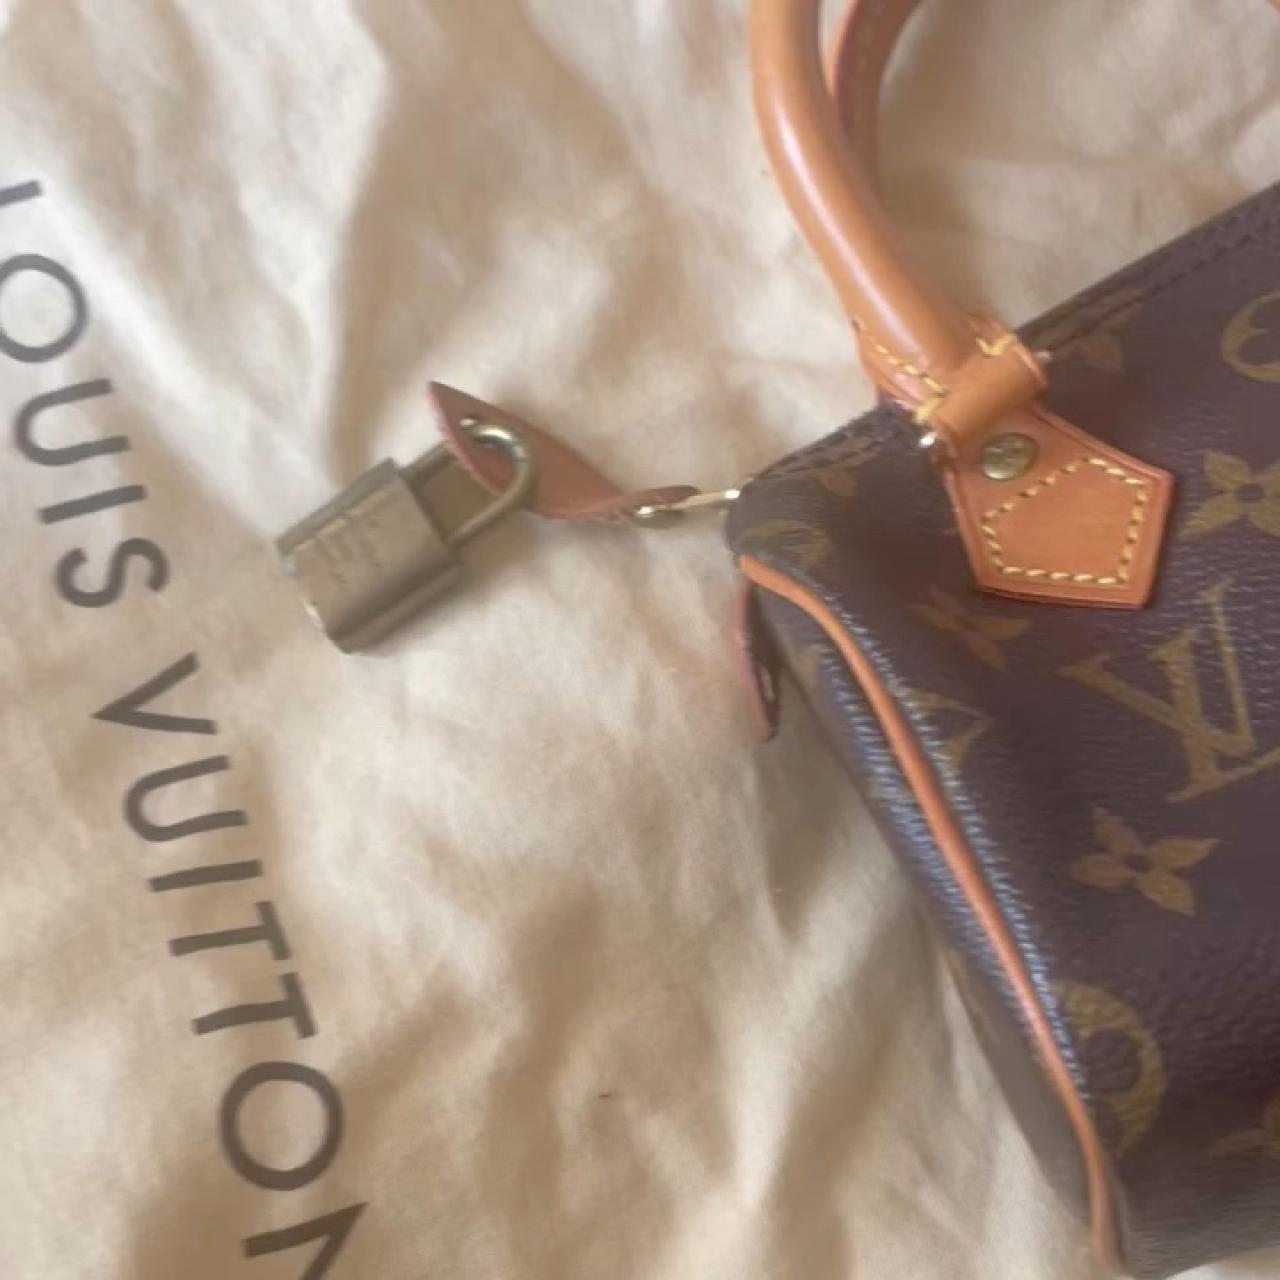 Vintage Louis Vuitton Mini Sac HL $1050 including - Depop